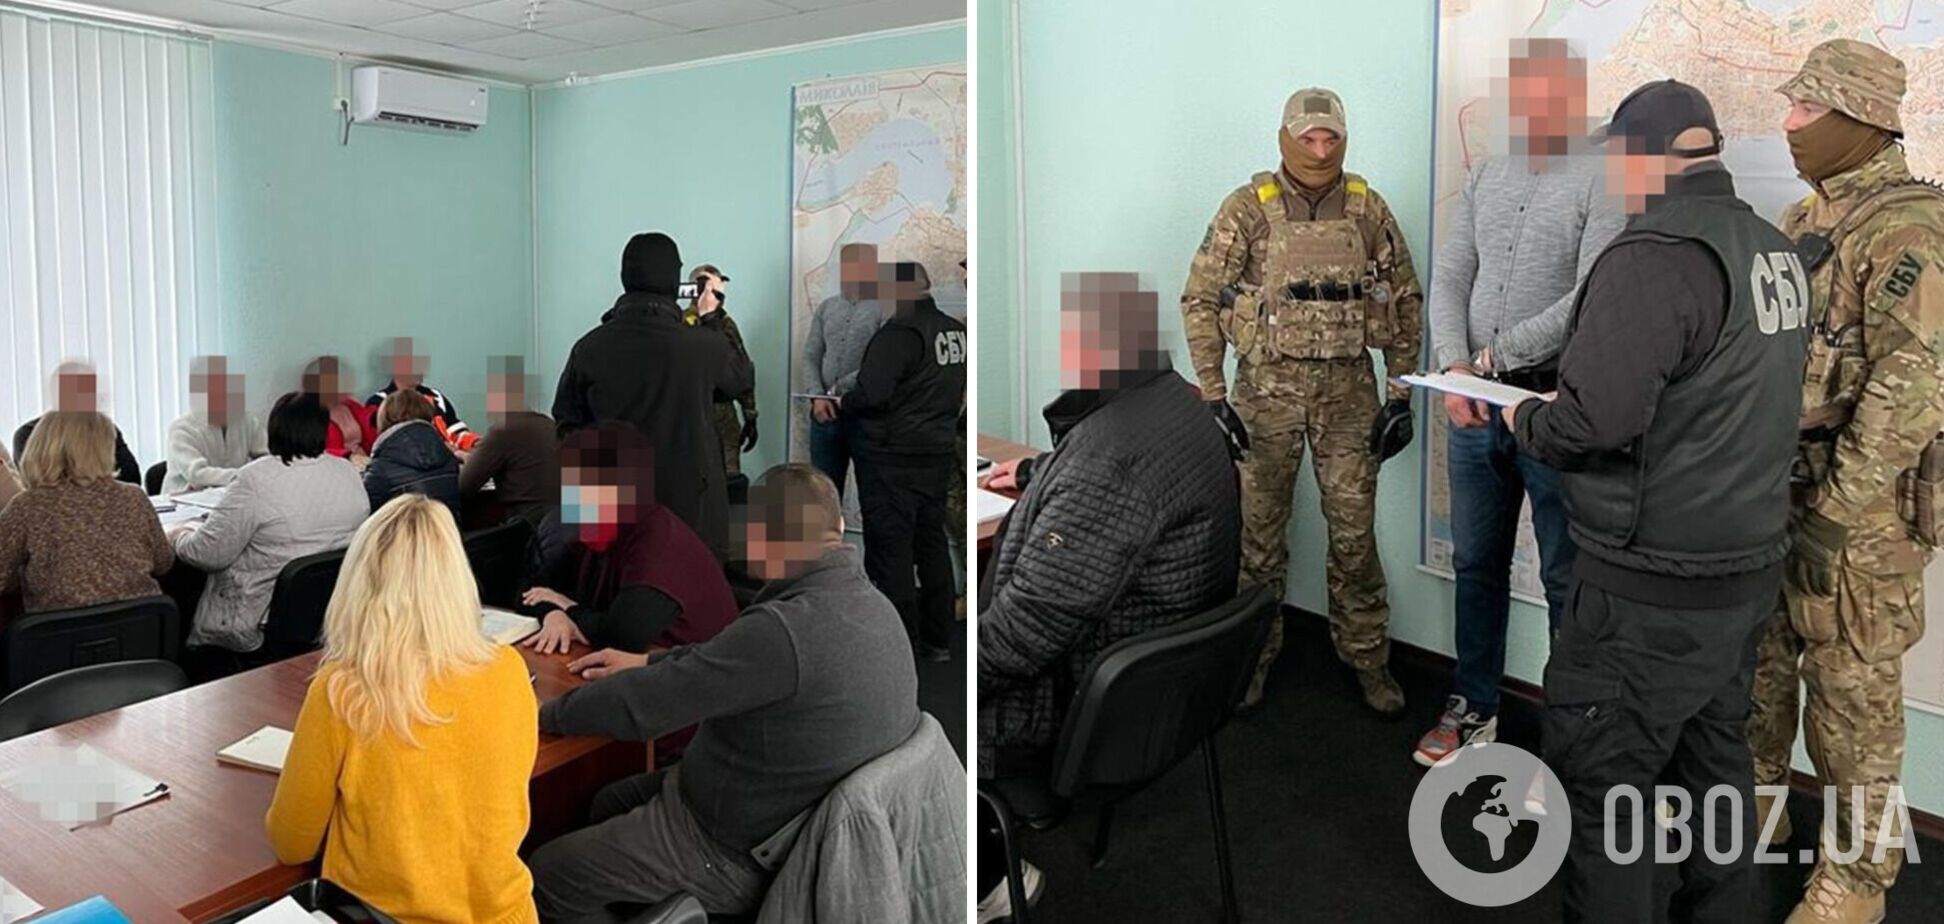 СБУ обезвредила агентуру РФ, возглавляемую чиновником из Николаева: его задержали во время совещания у мэра. Фото